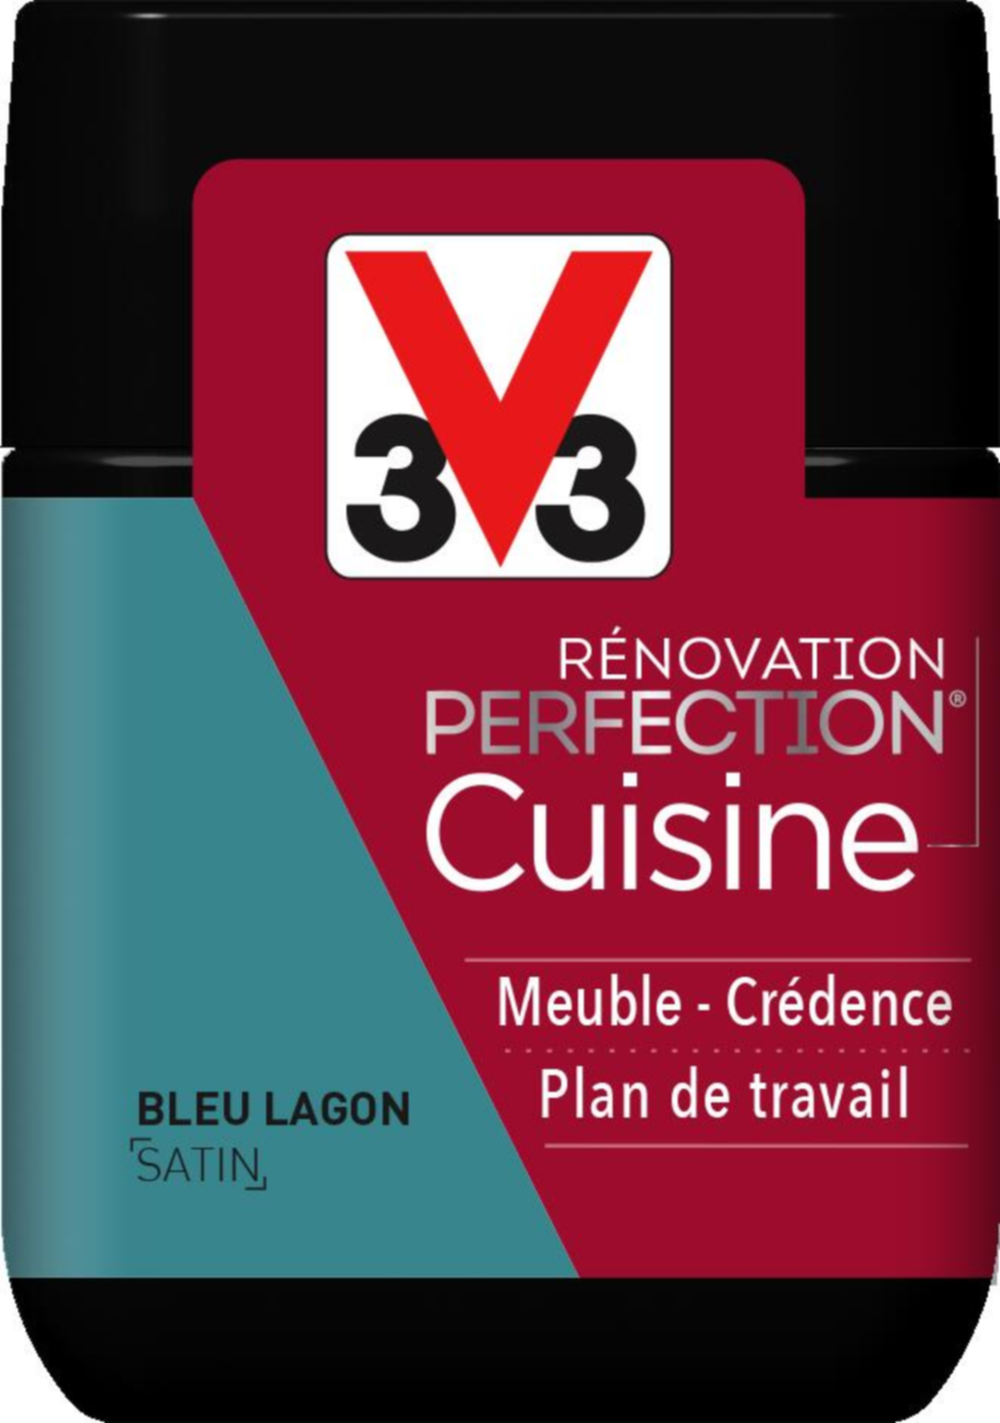 Peinture rénovation cuisine Perfection bleu lagon satin testeur 75ml - V33